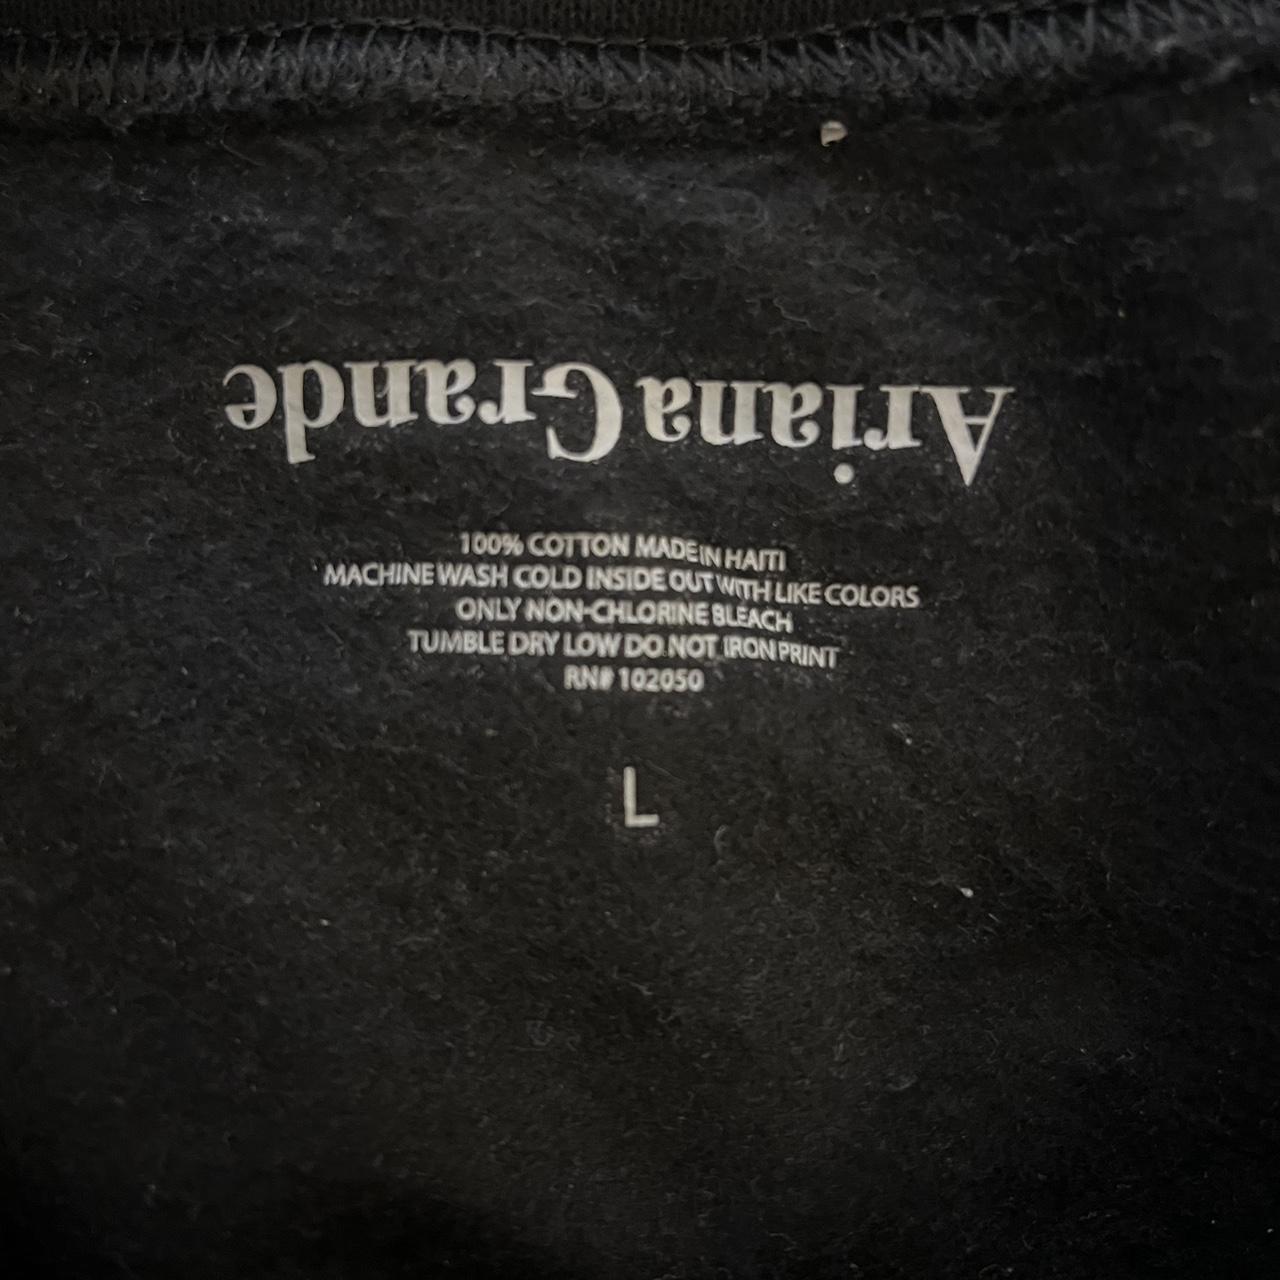 selling this black ariana grande sweatshirt in a... - Depop